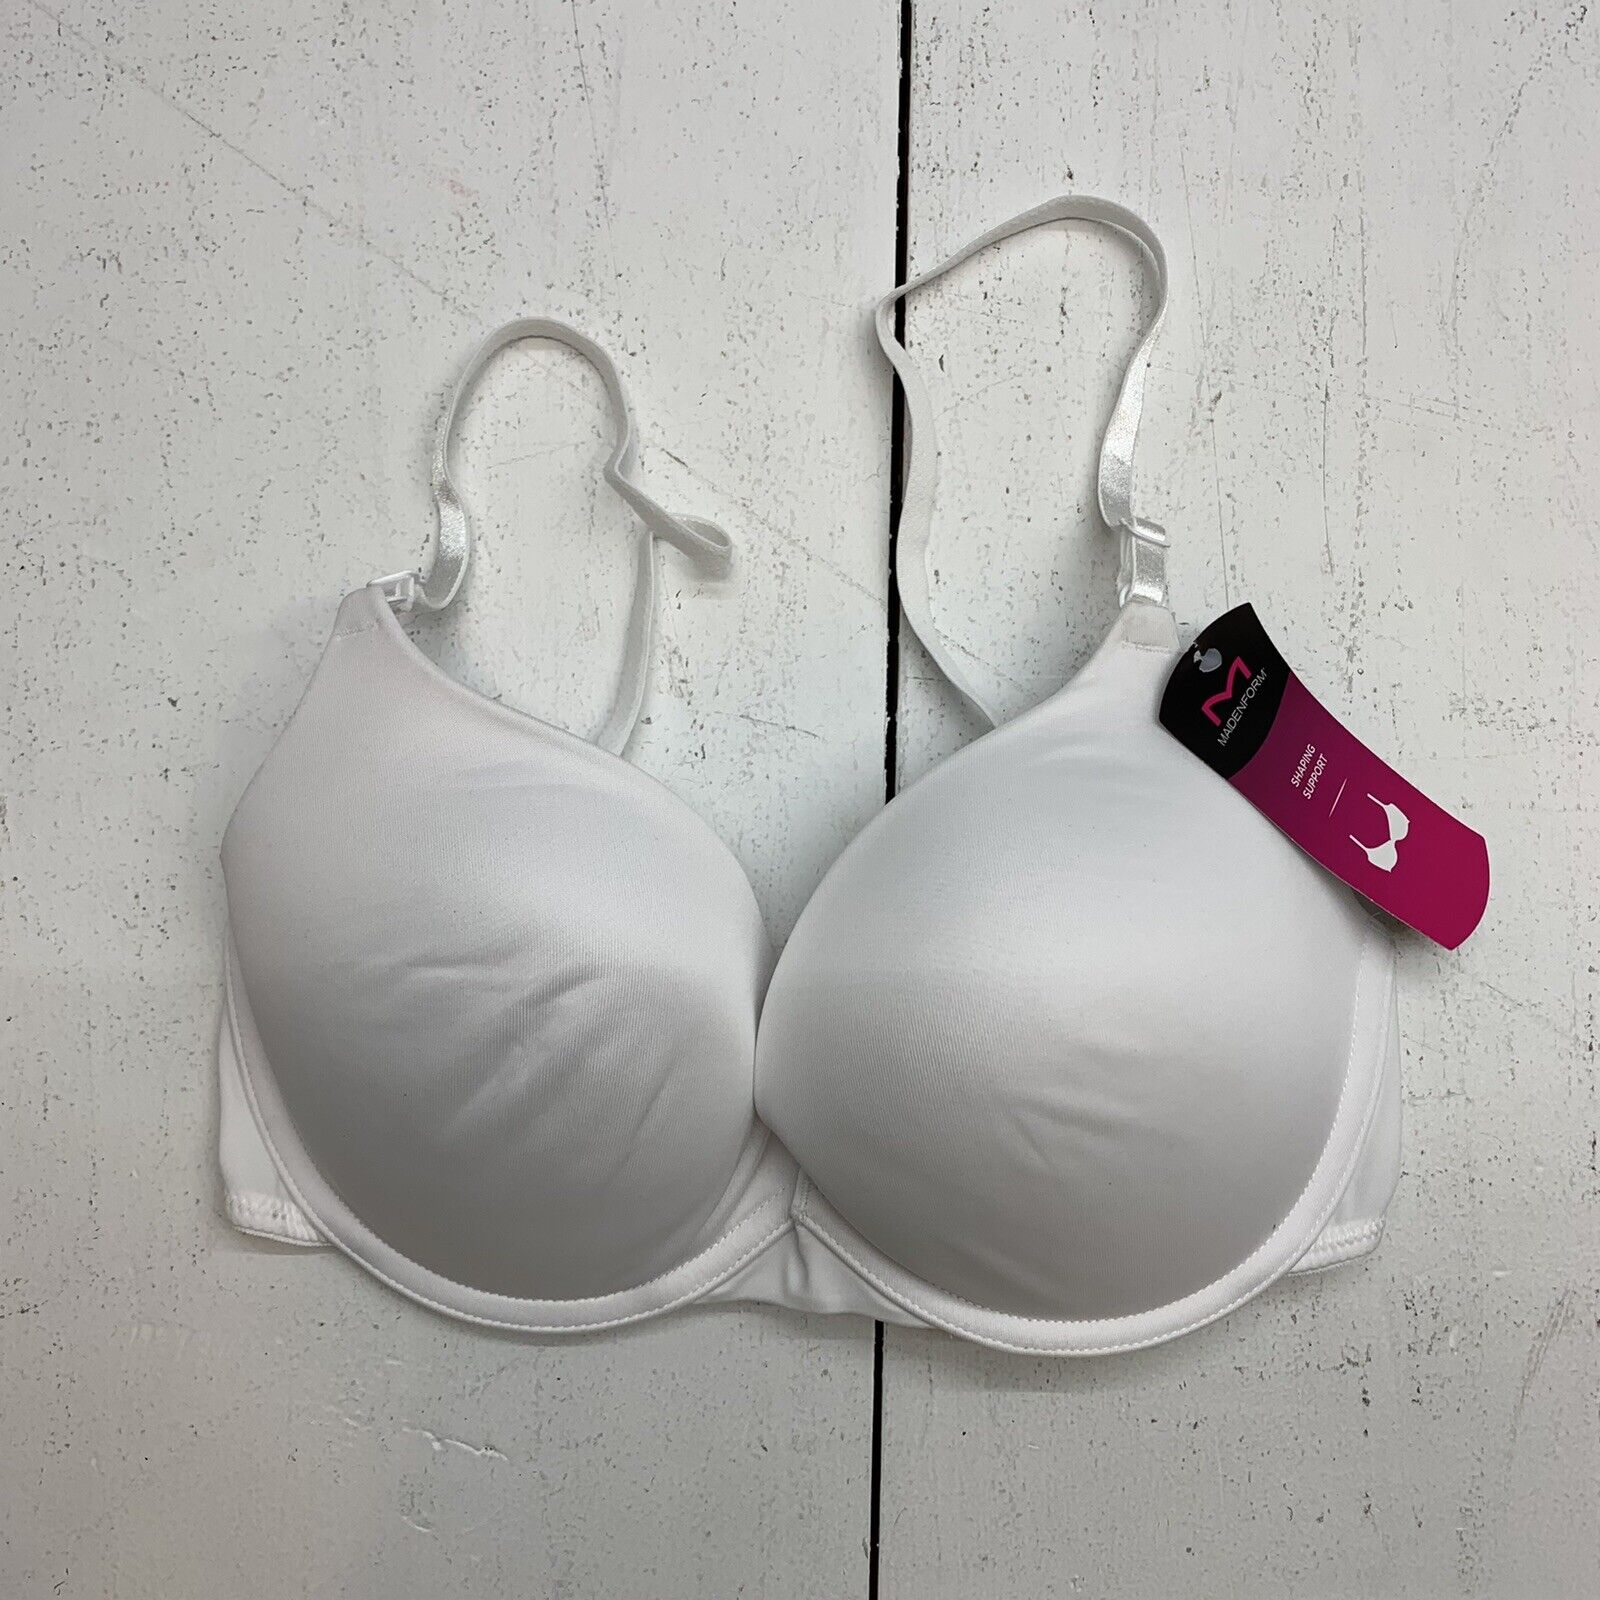 women's bra size 34D